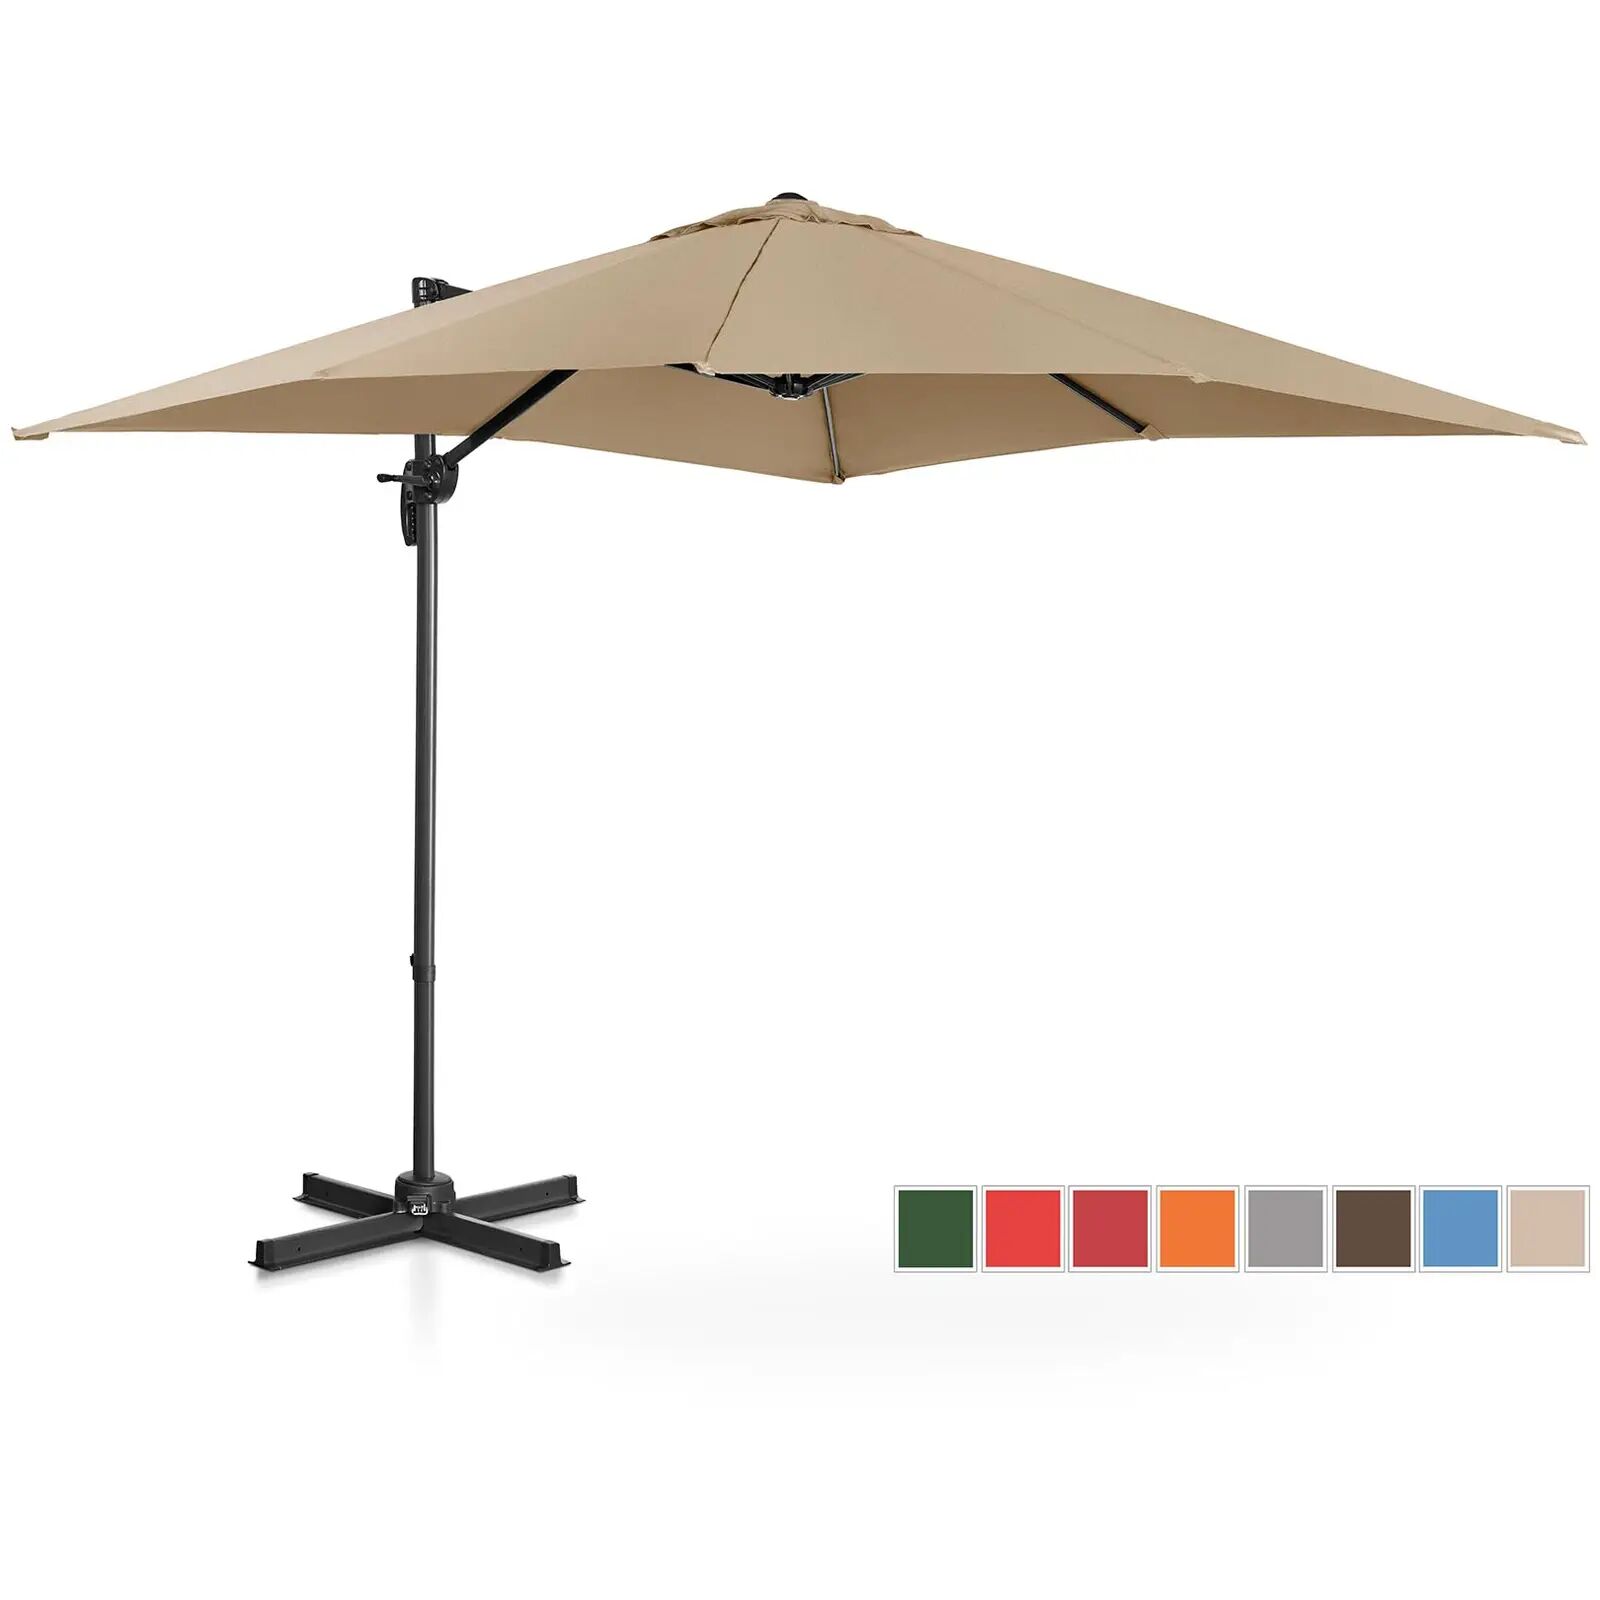 uniprodo ombrellone decentrato - grigio talpa - quadrato - 250 x 250 cm - inclinabile e girabile uni_umbrella_2sq250ta_n